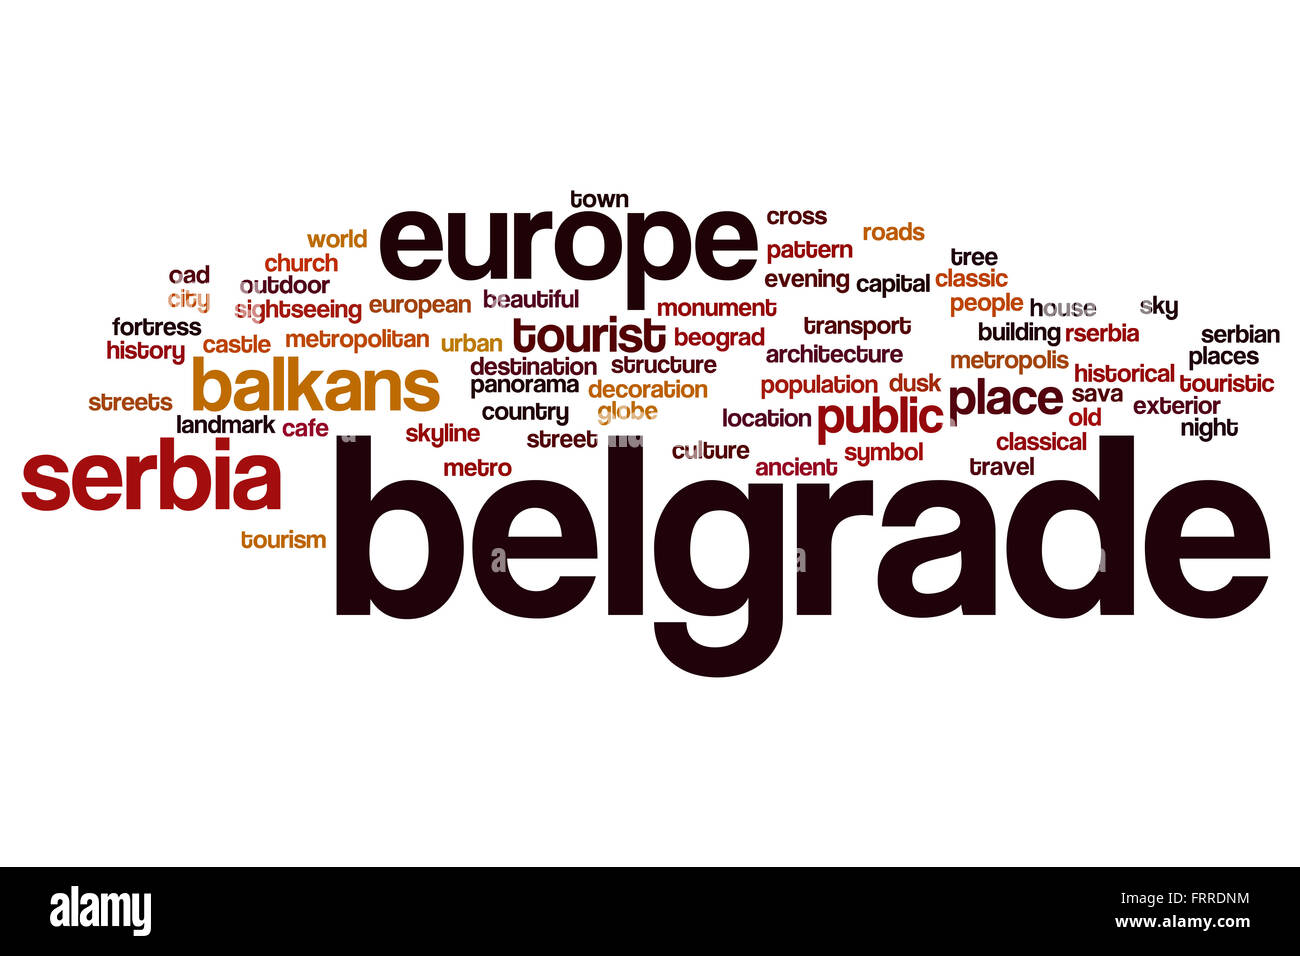 Belgrade word cloud concept Stock Photo